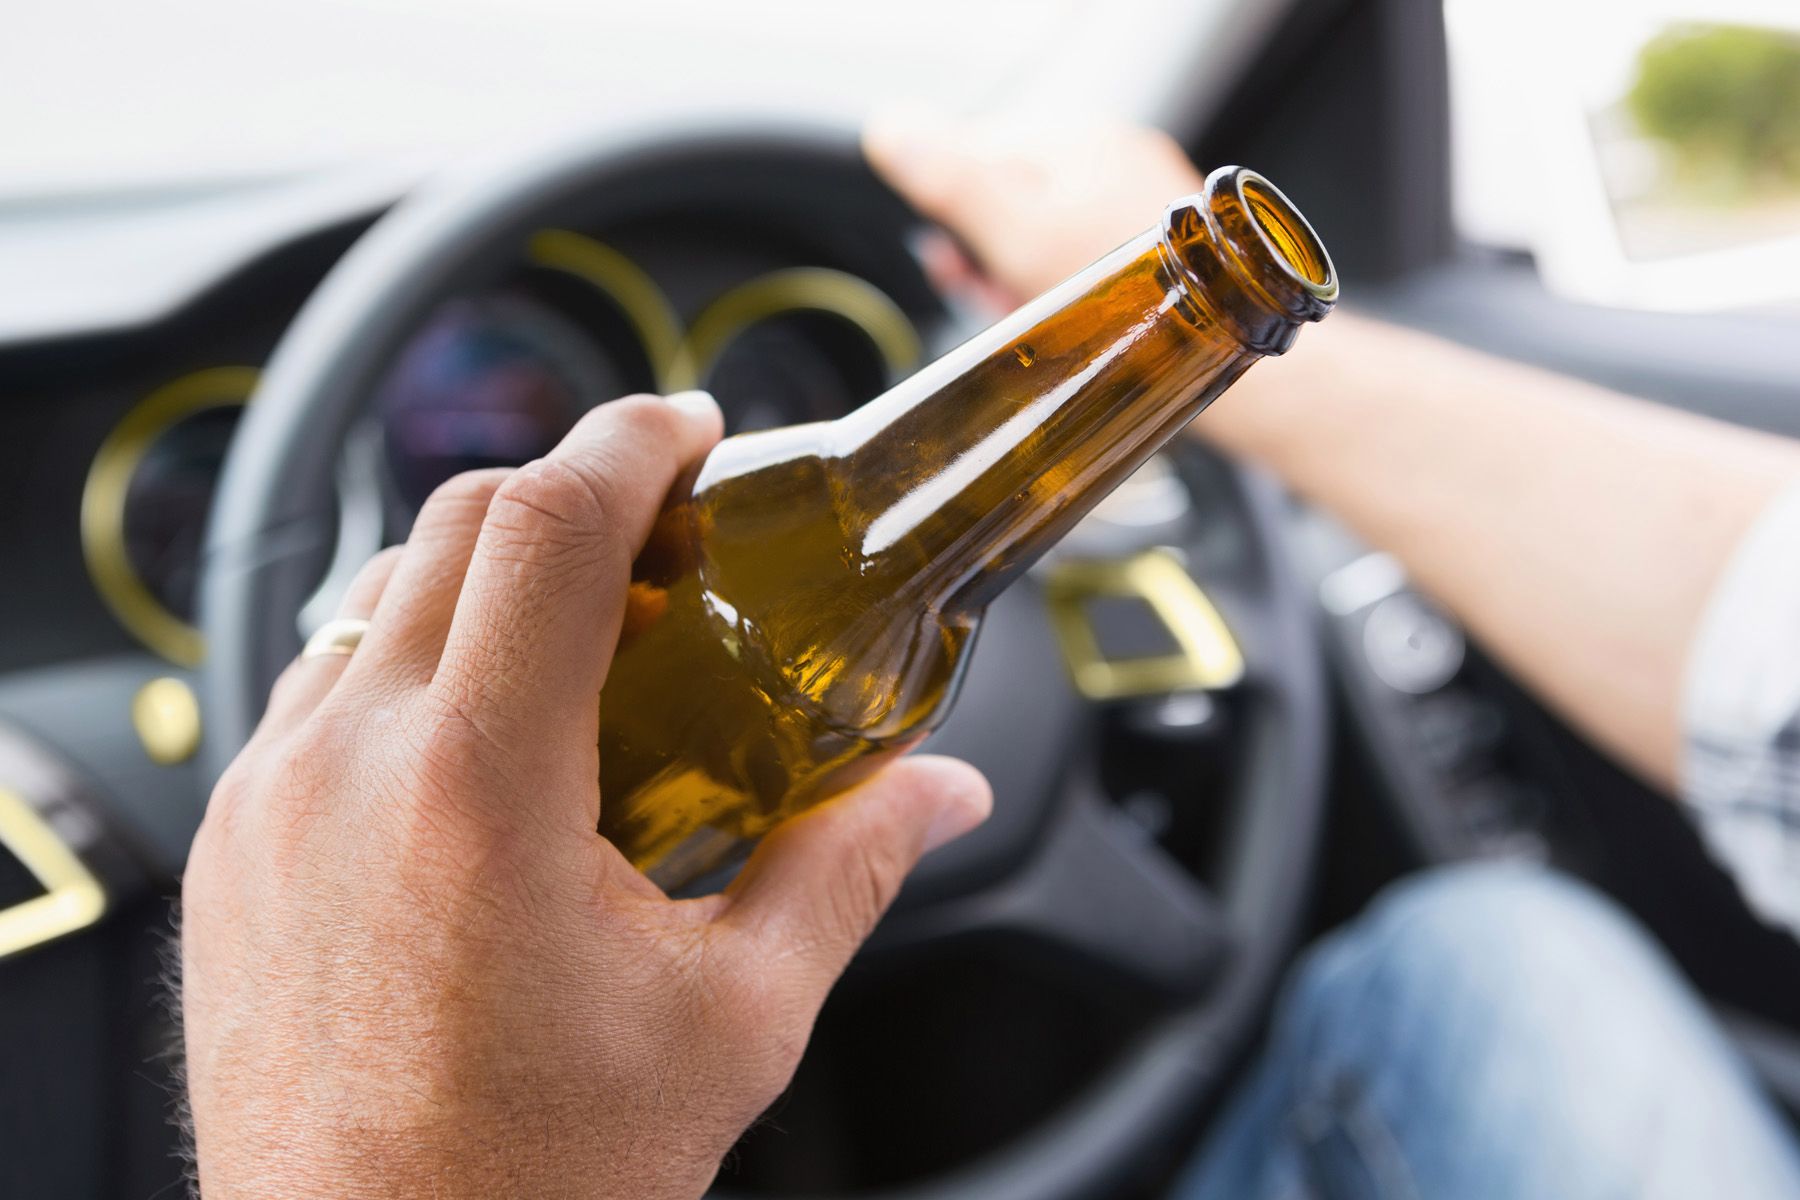 Uhapšeno 75 vozača: Podgoričanin pijan vozio 172 kilometra na čas